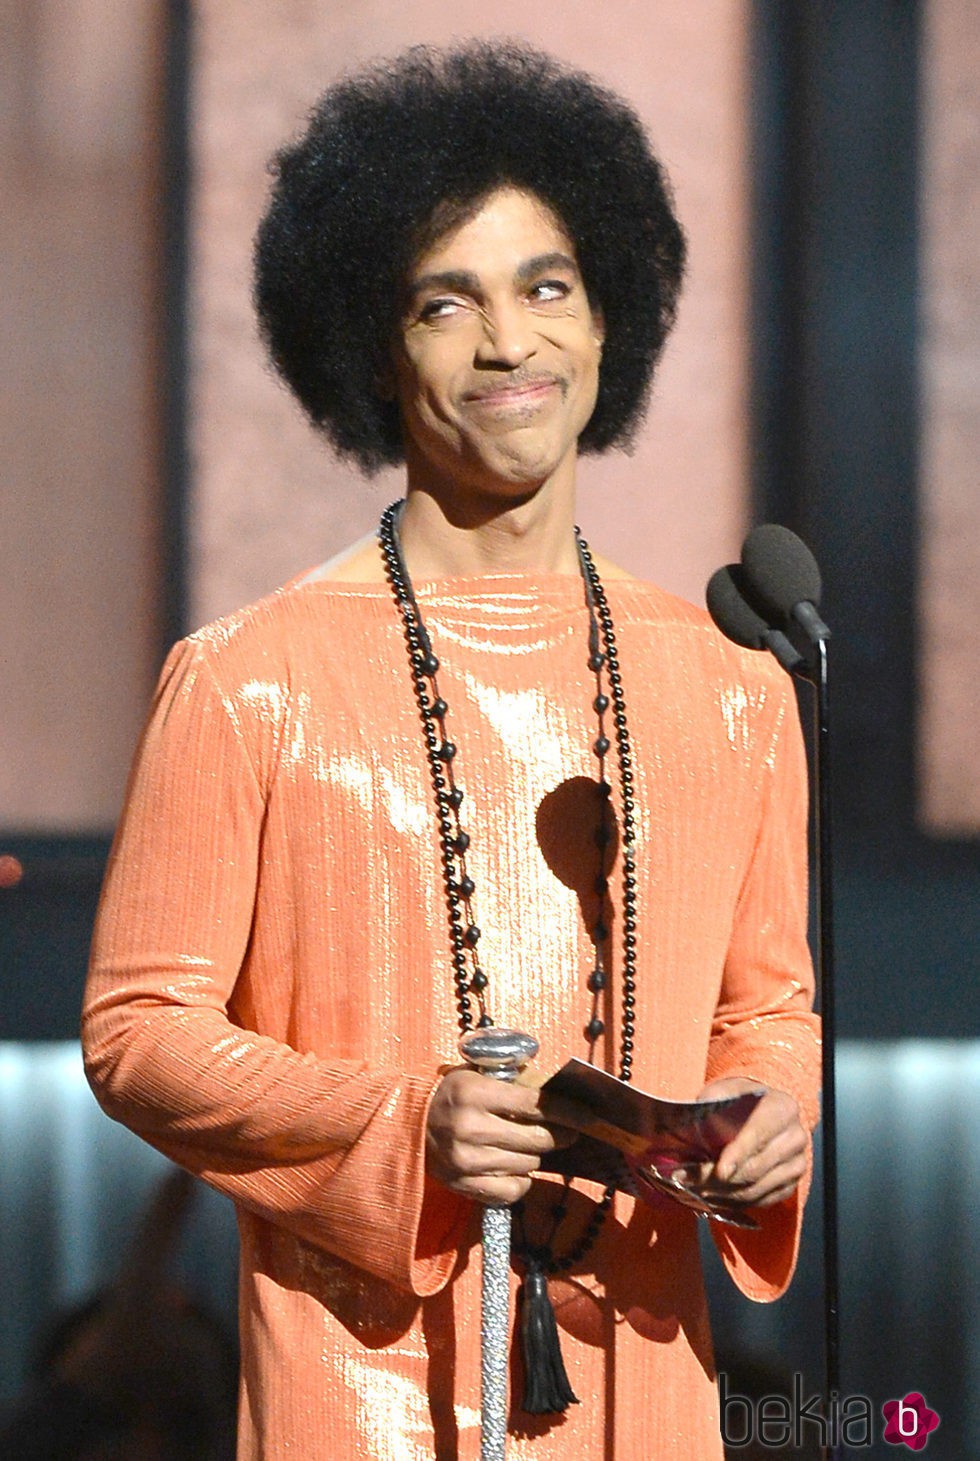 Prince durante los premios GRAMMY 2015